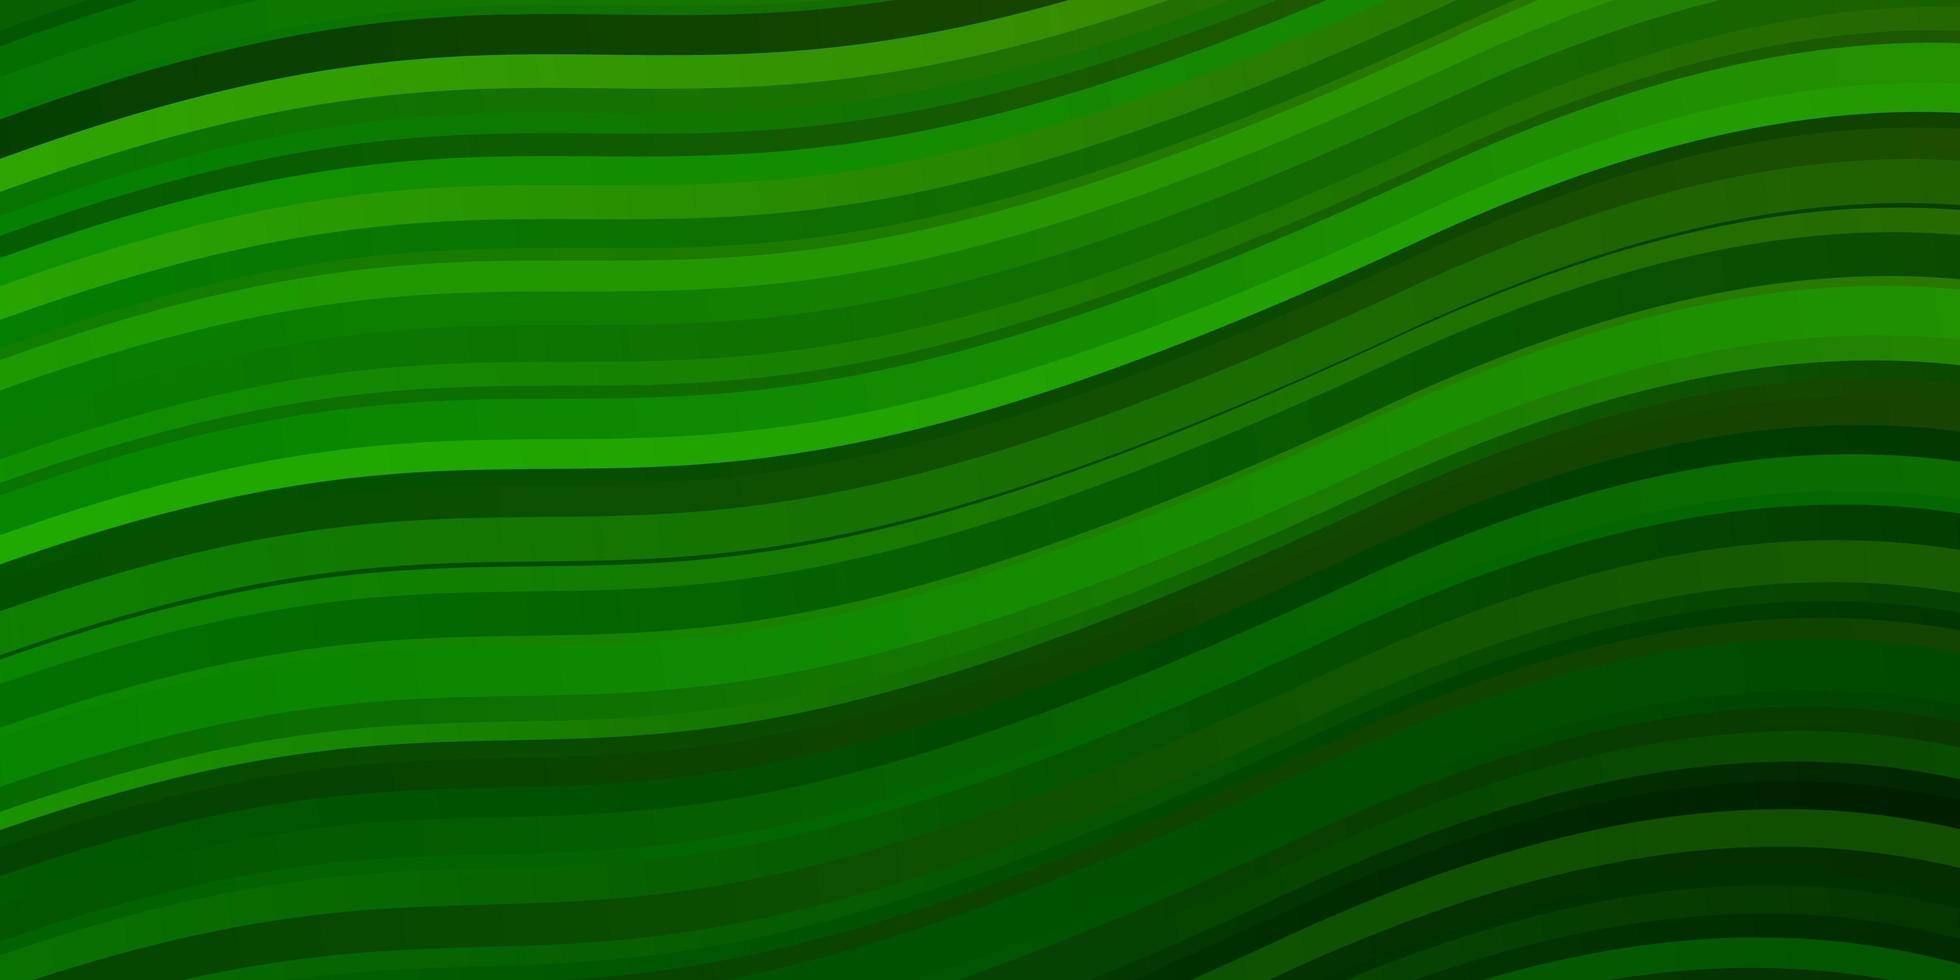 modello vettoriale verde chiaro con curve.